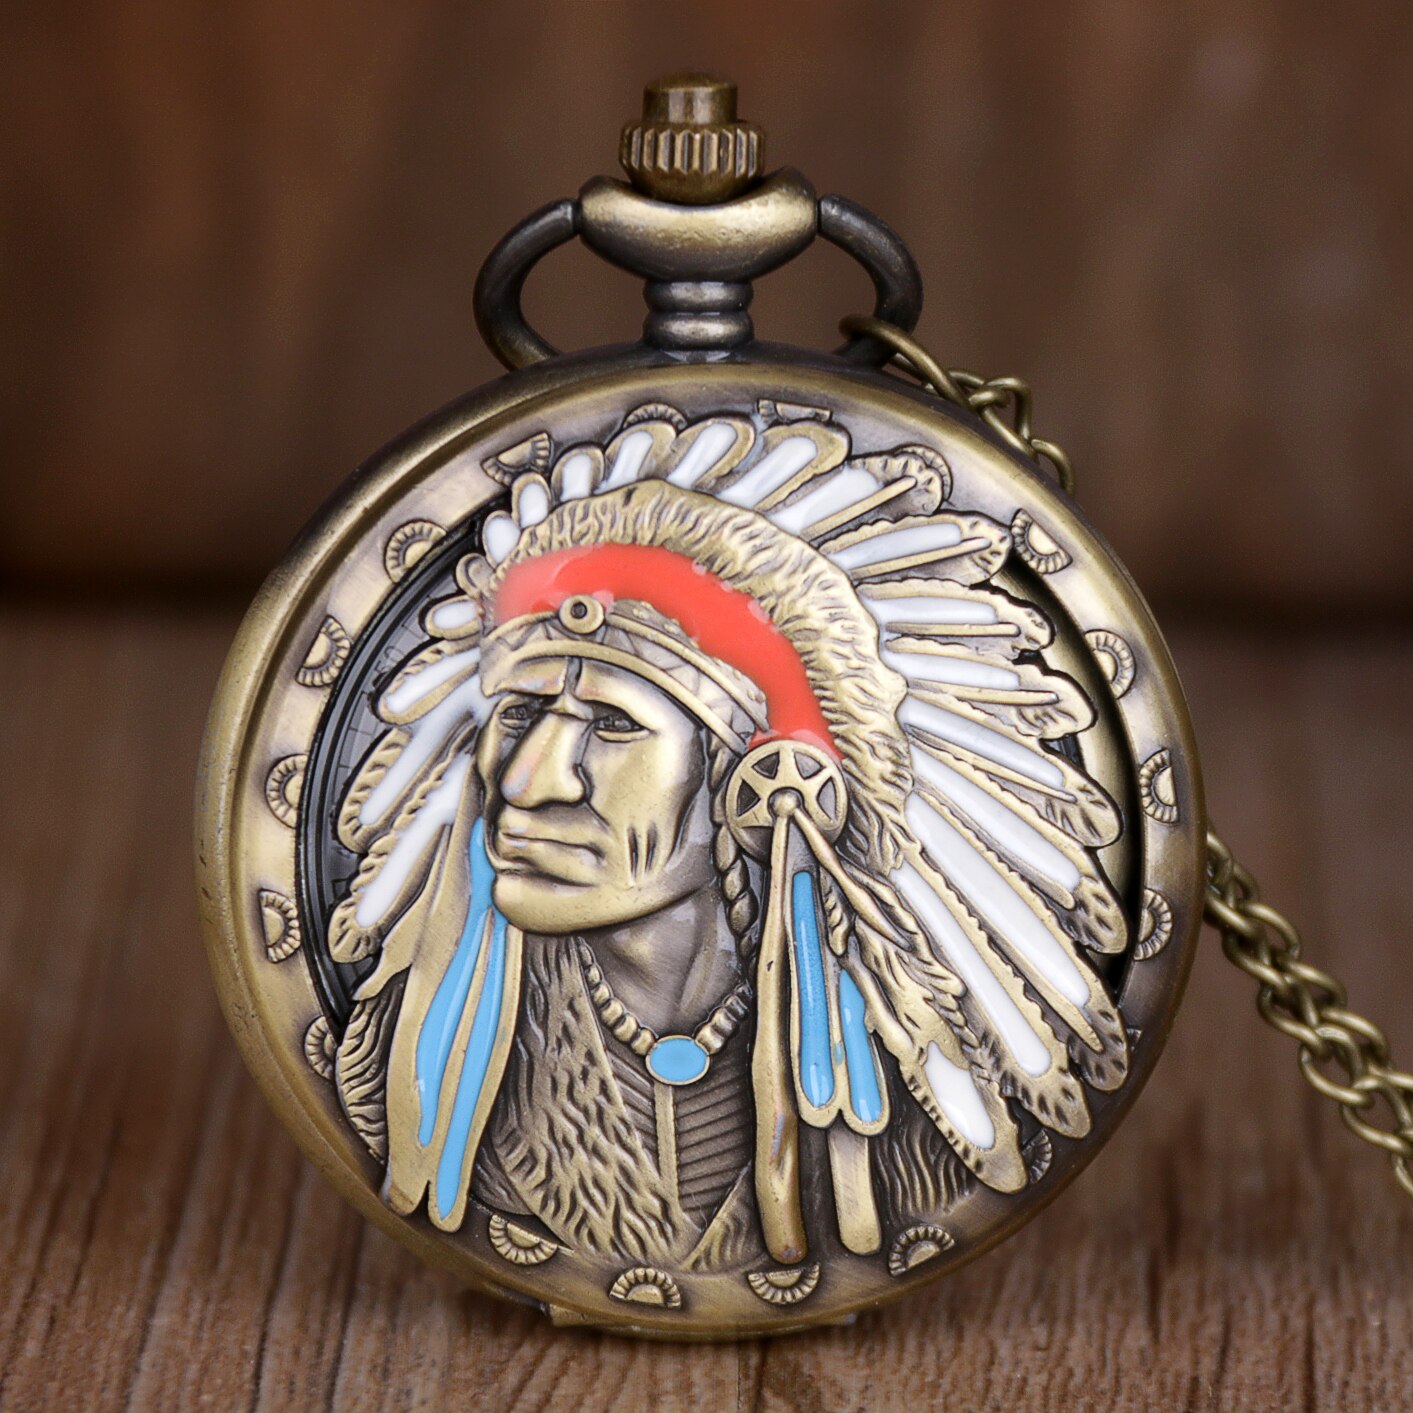 Bedste salg gamle indiske gamle mand farverige portræt kvarts fob lommeur bronze vedhæng halskæde kæde souvenir